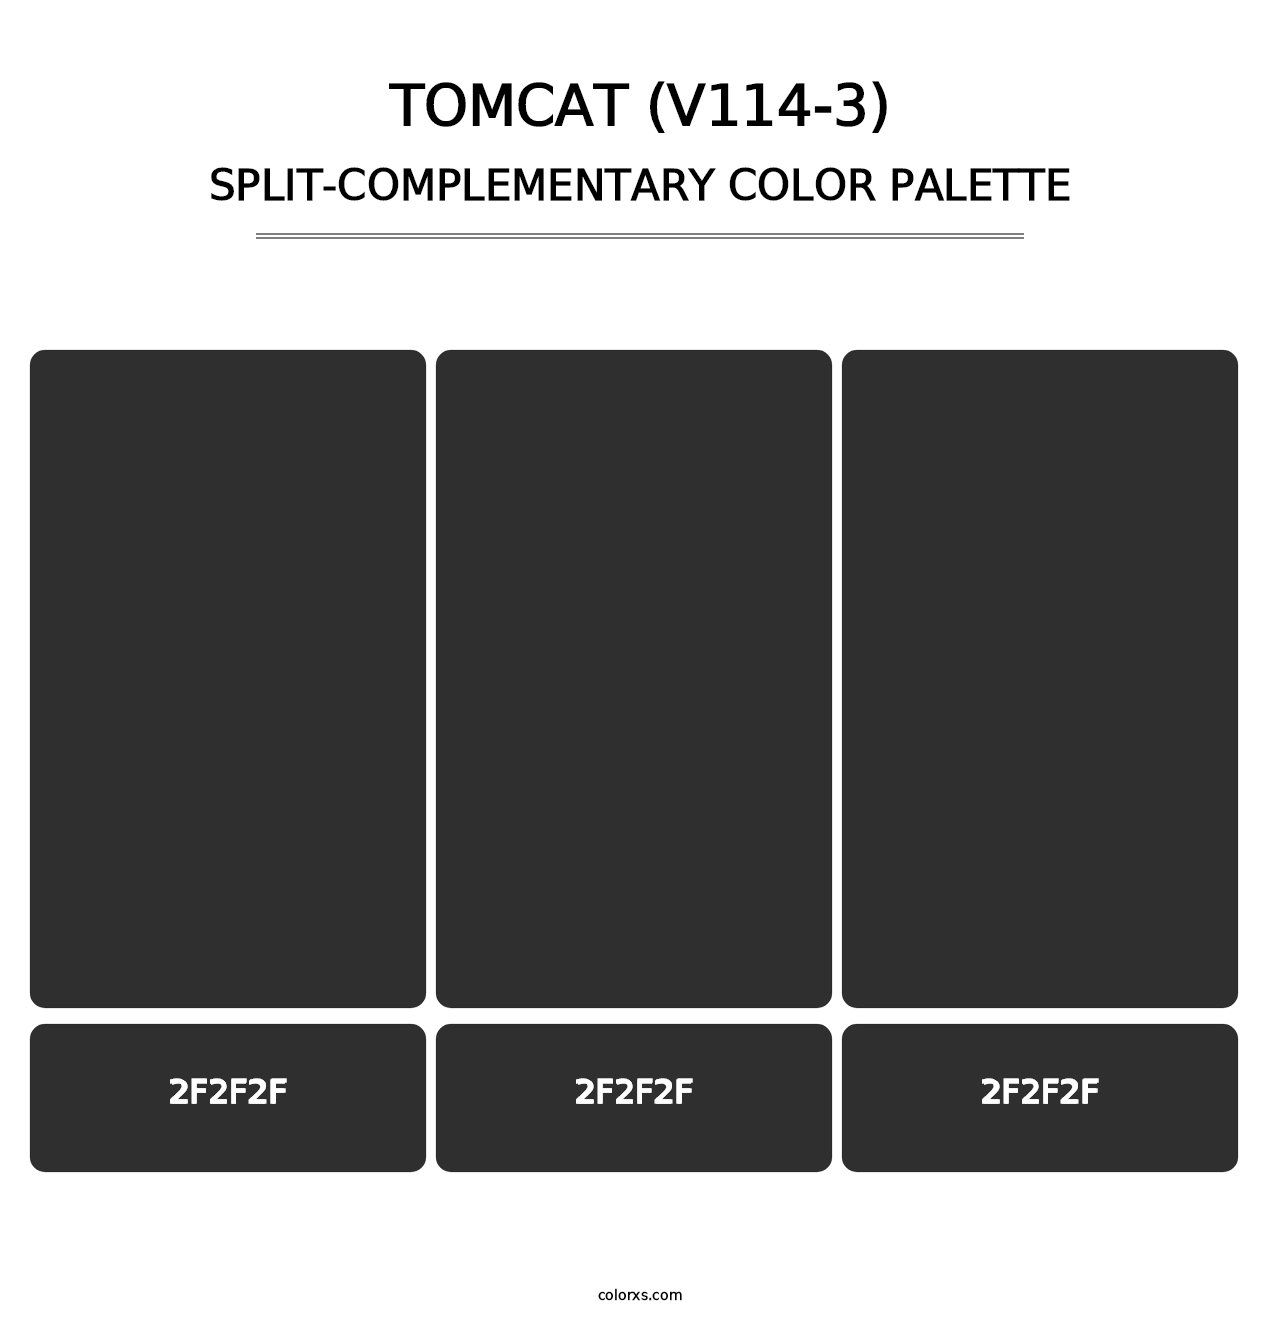 Tomcat (V114-3) - Split-Complementary Color Palette